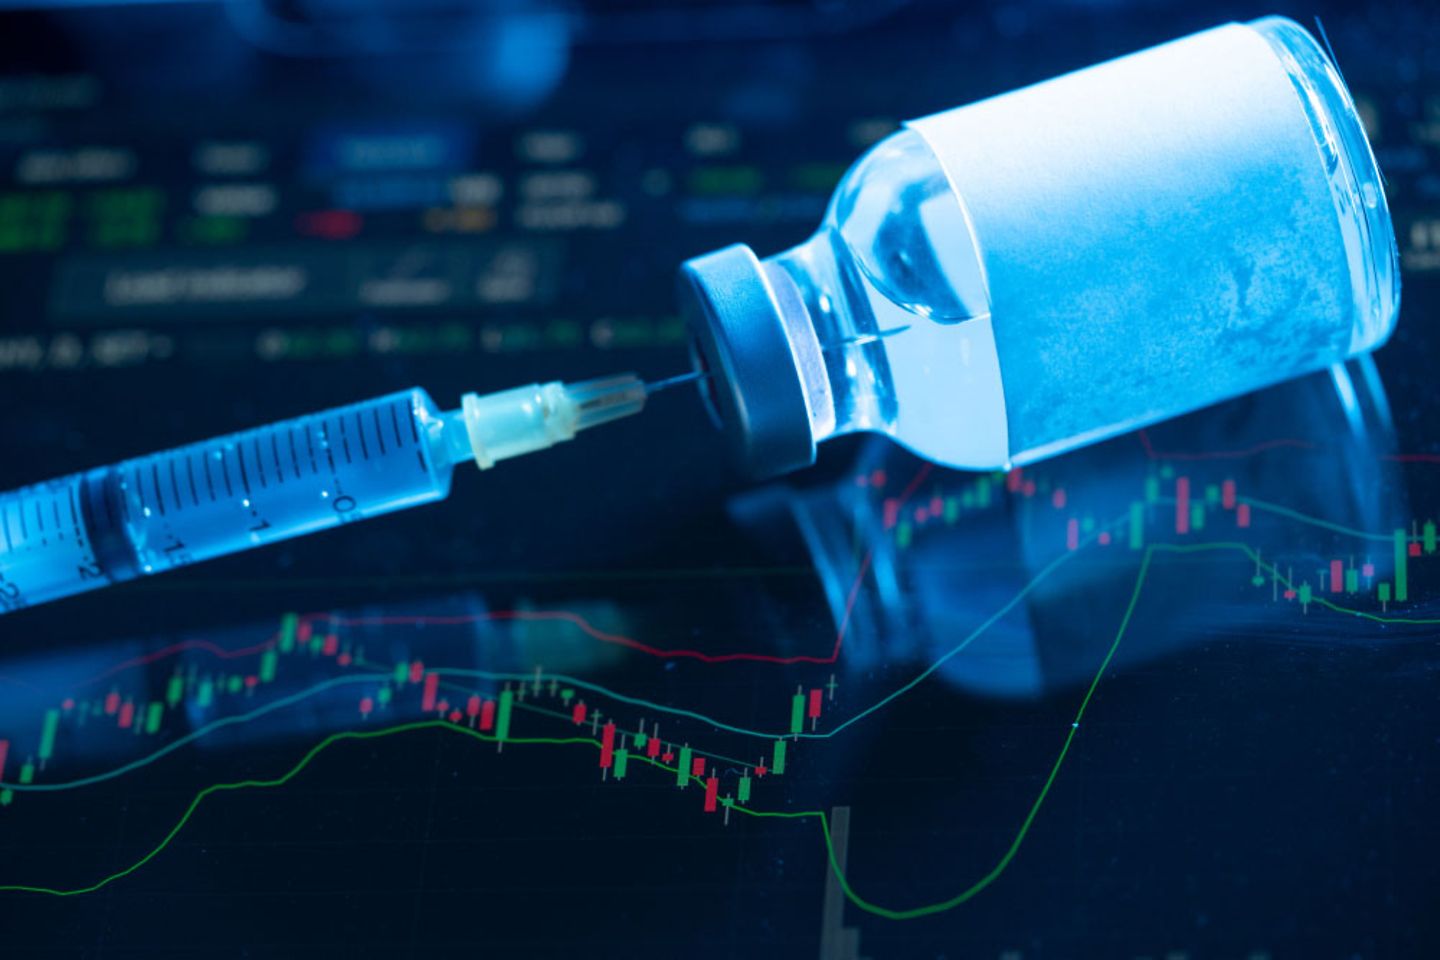 Een naald steekt in een fles met vaccin tegen een donkere achtergrond en diagrammen